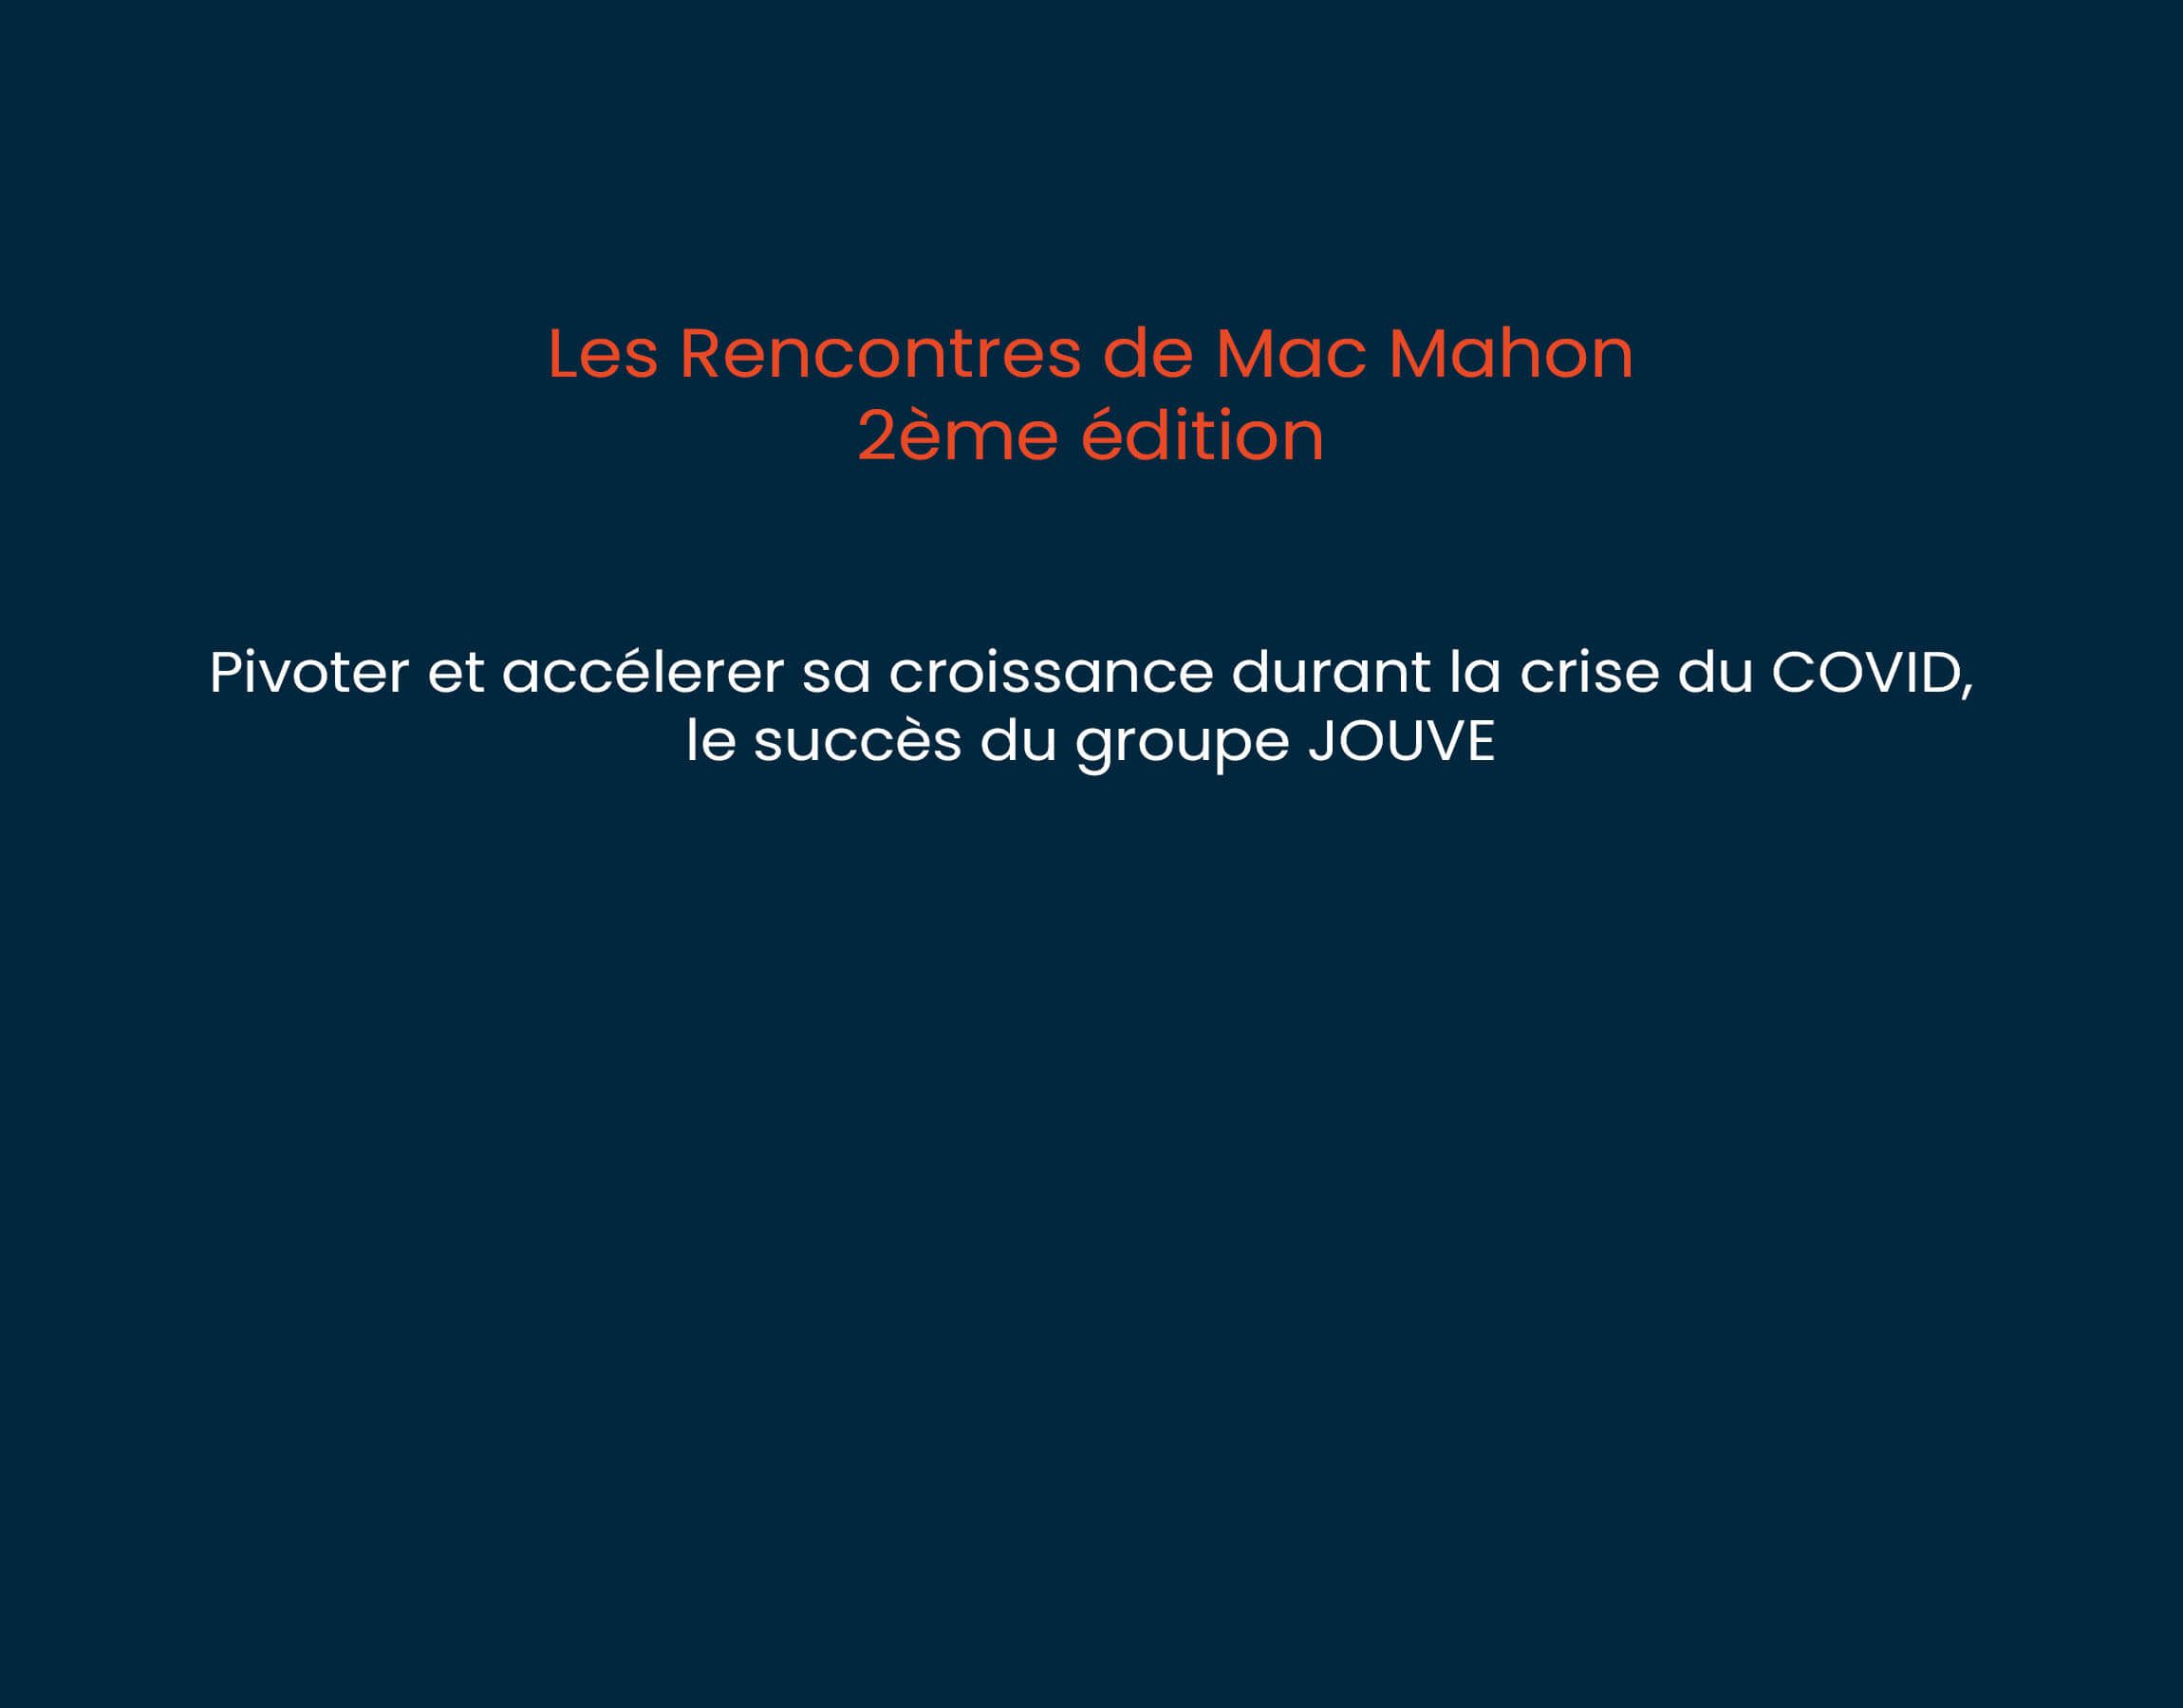 Les Rencontres De Mac Mahon